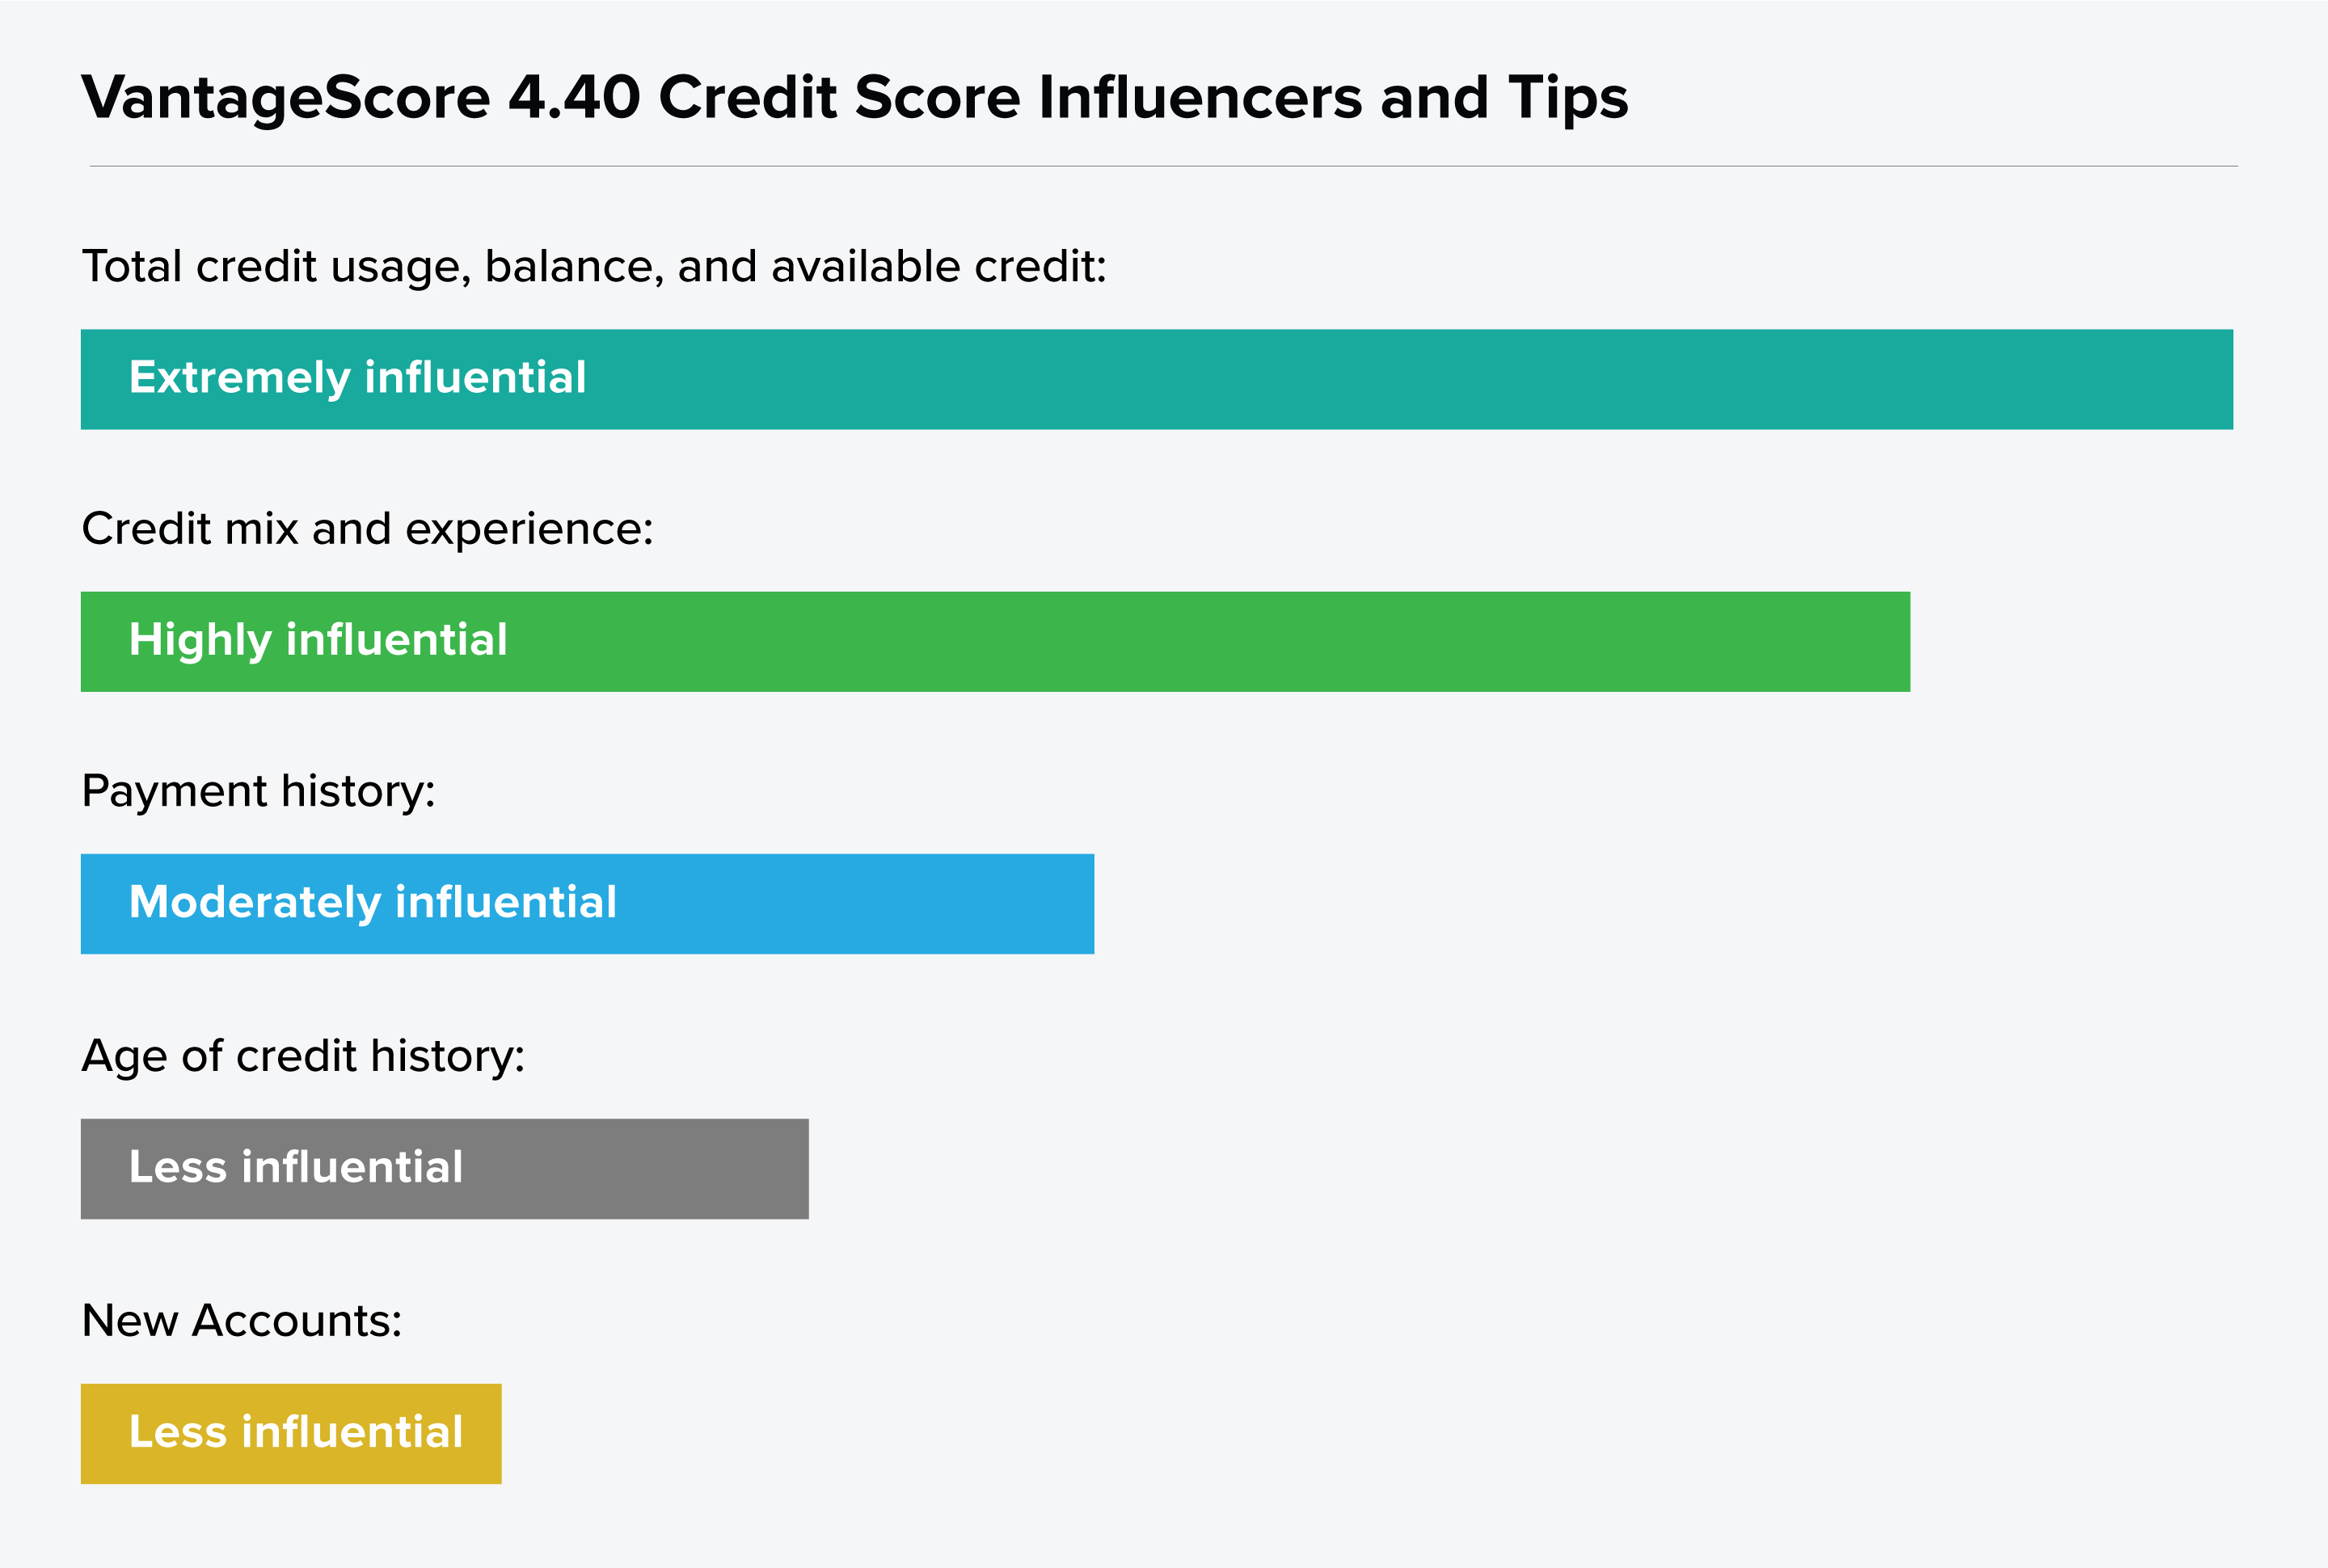 Gráfico que muestra los influenciadores de VantageScore 4.40 por grado: uso de crédito total, mezcla de crédito, historial de pago, antigüedad del historial de crédito y cuentas nuevas.